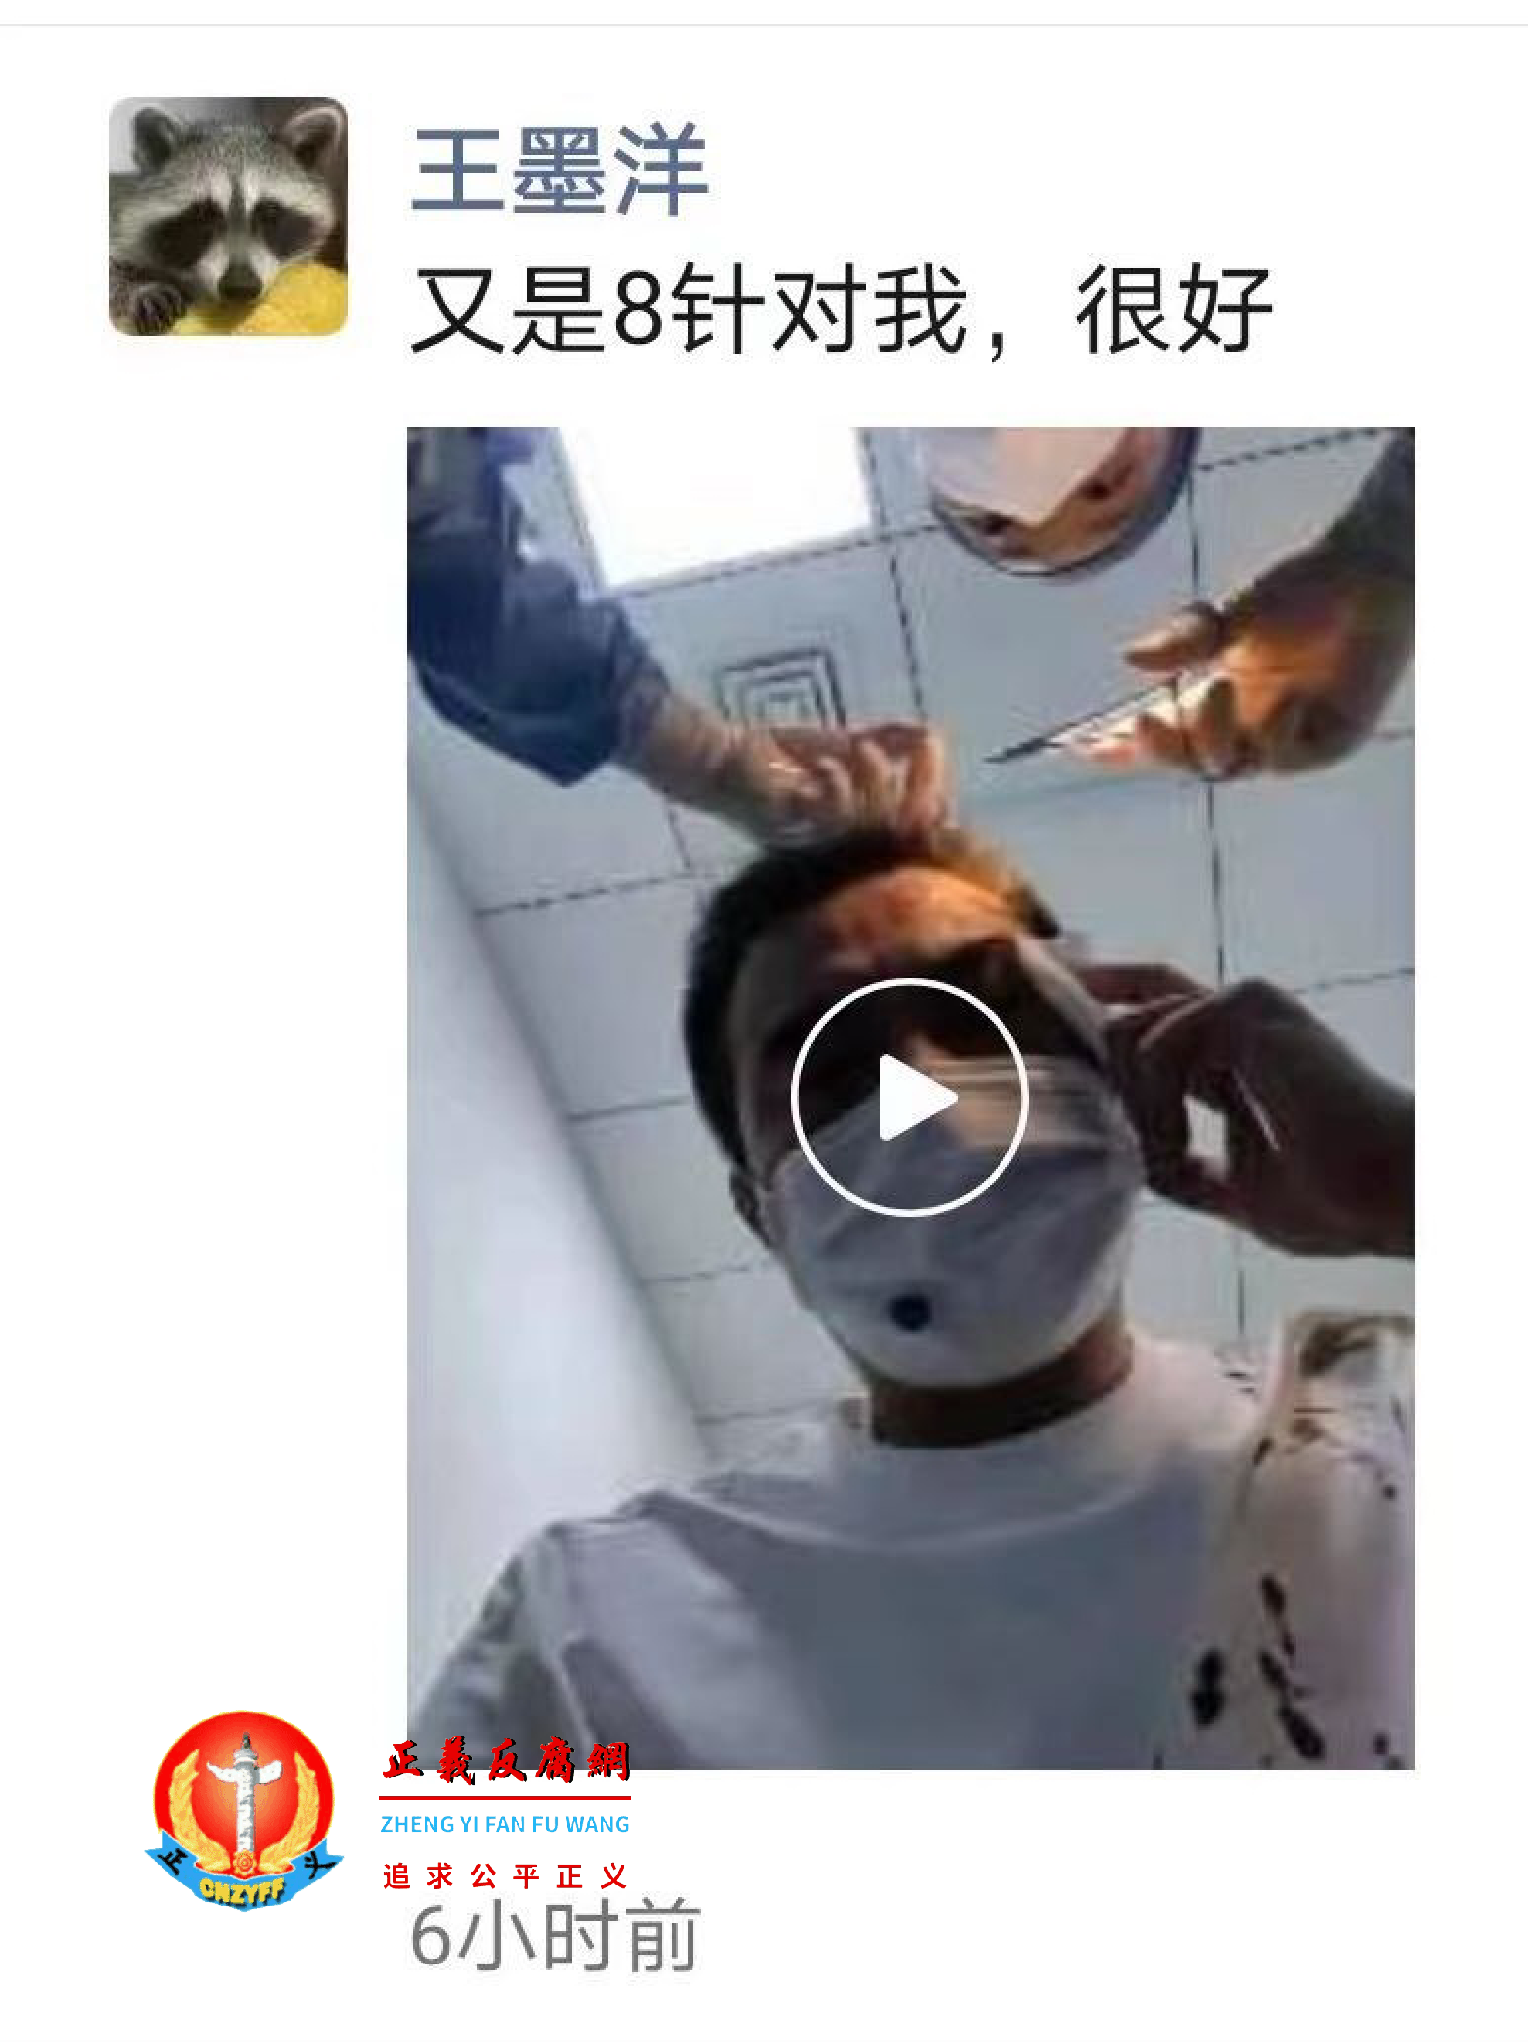 王墨洋在微信朋友圈群中上传了自己被打伤的图片和在医院缝合伤口的视频片段..png